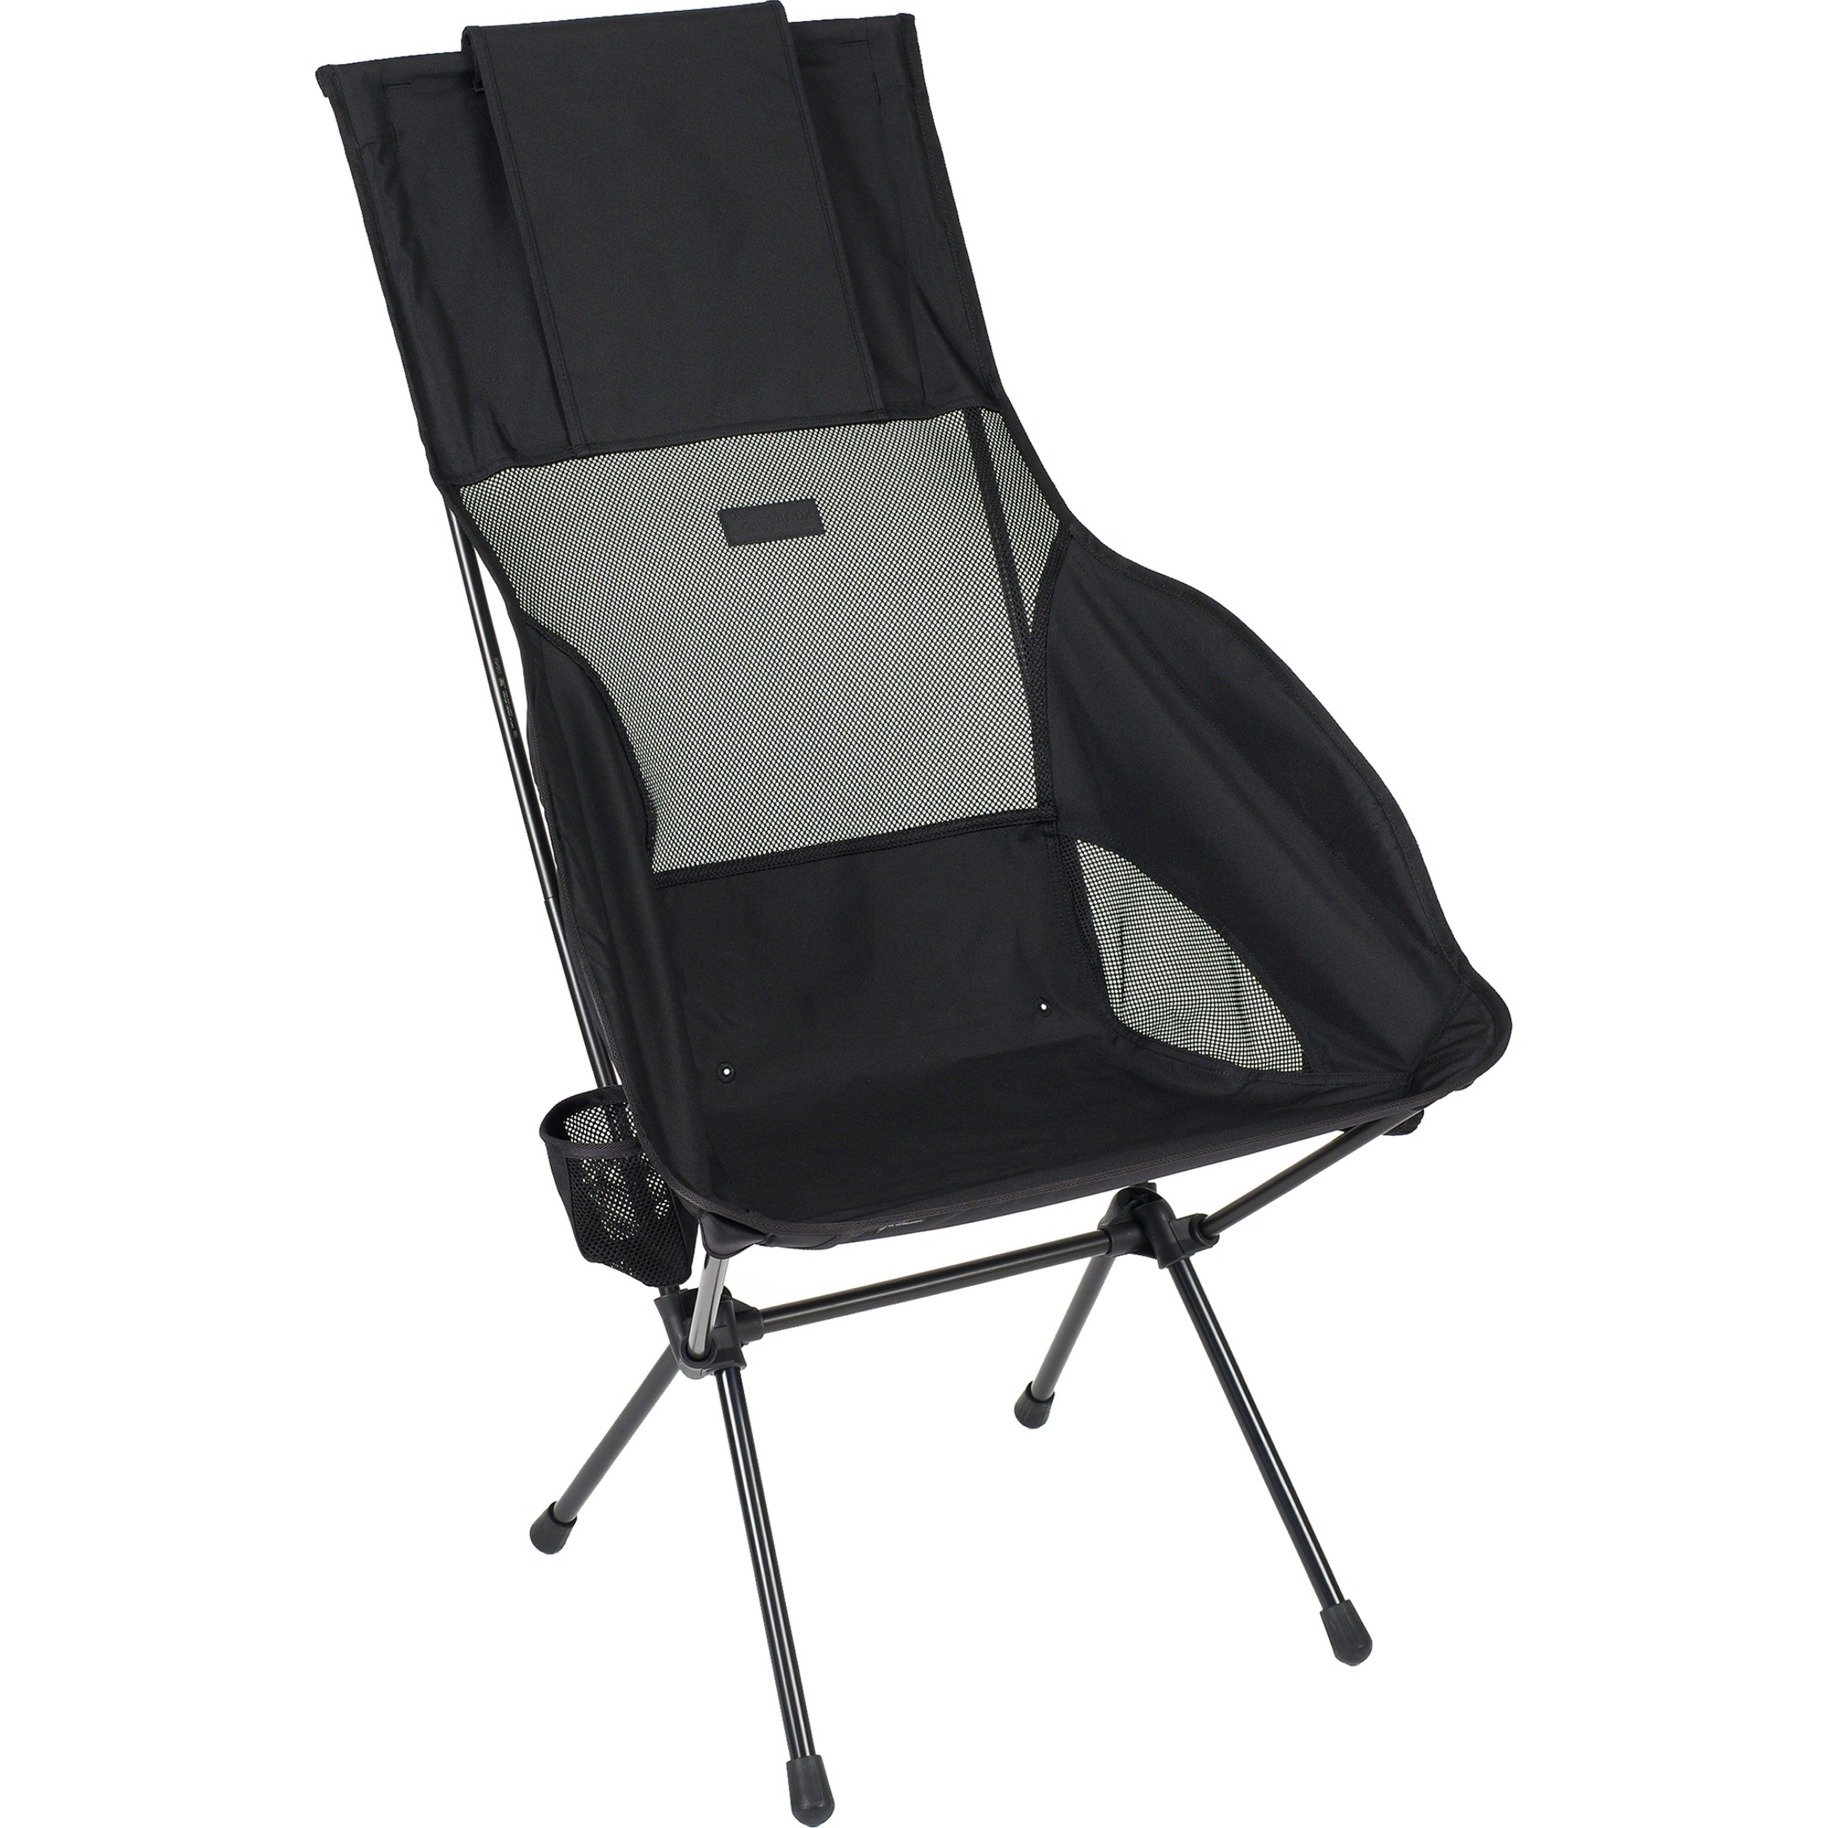 Camping-Stuhl Savanna Chair 10000284 von Helinox